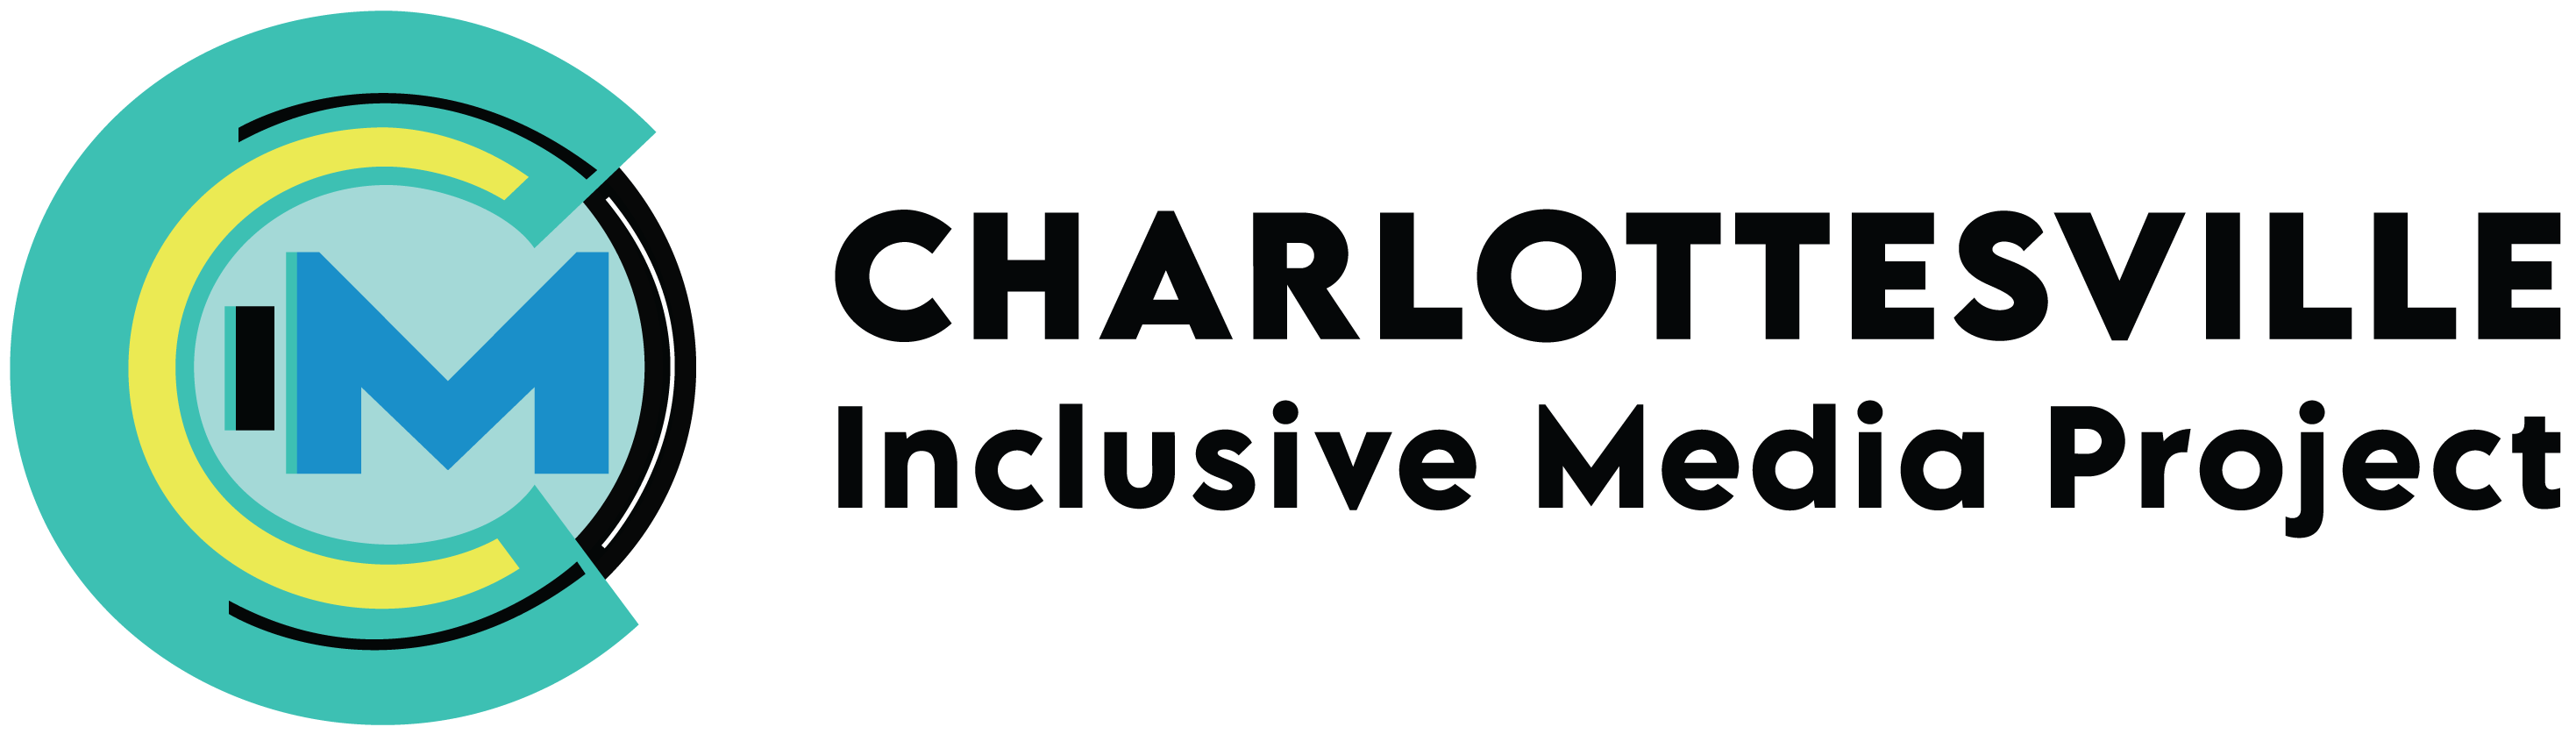 Charlottesville Inclusive Media Project